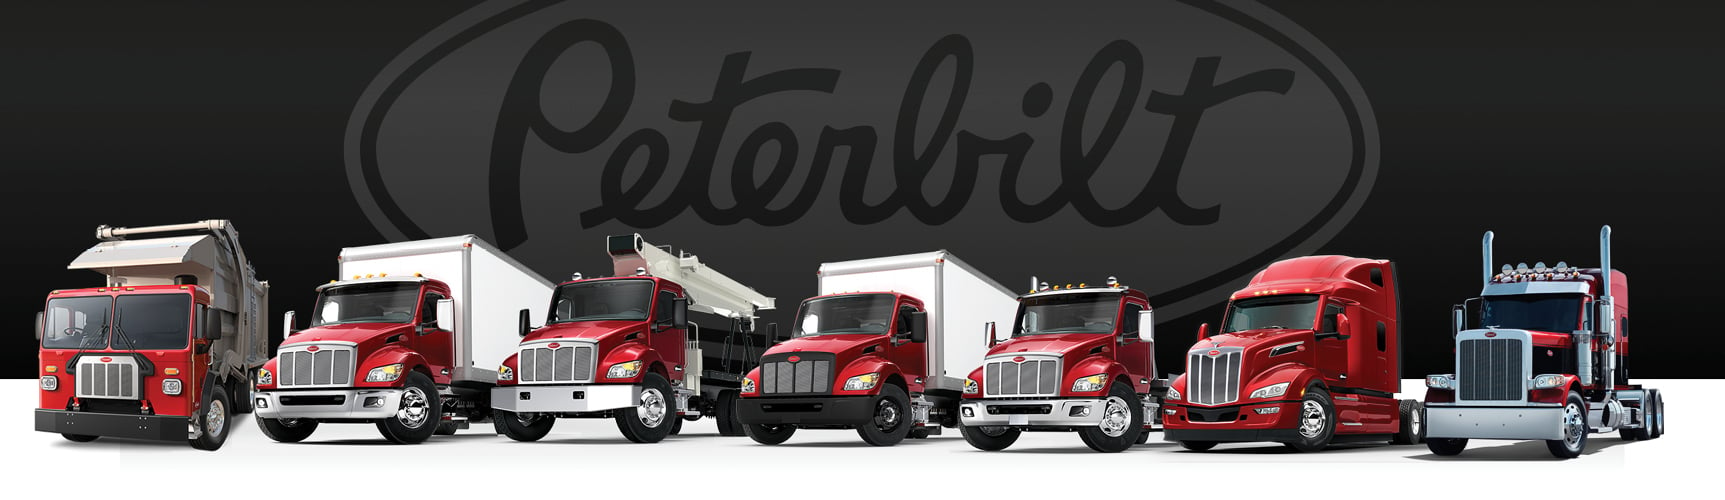 Peterbilt truck lineup with Peterbilt logo behind it | Peterbilt Trucks